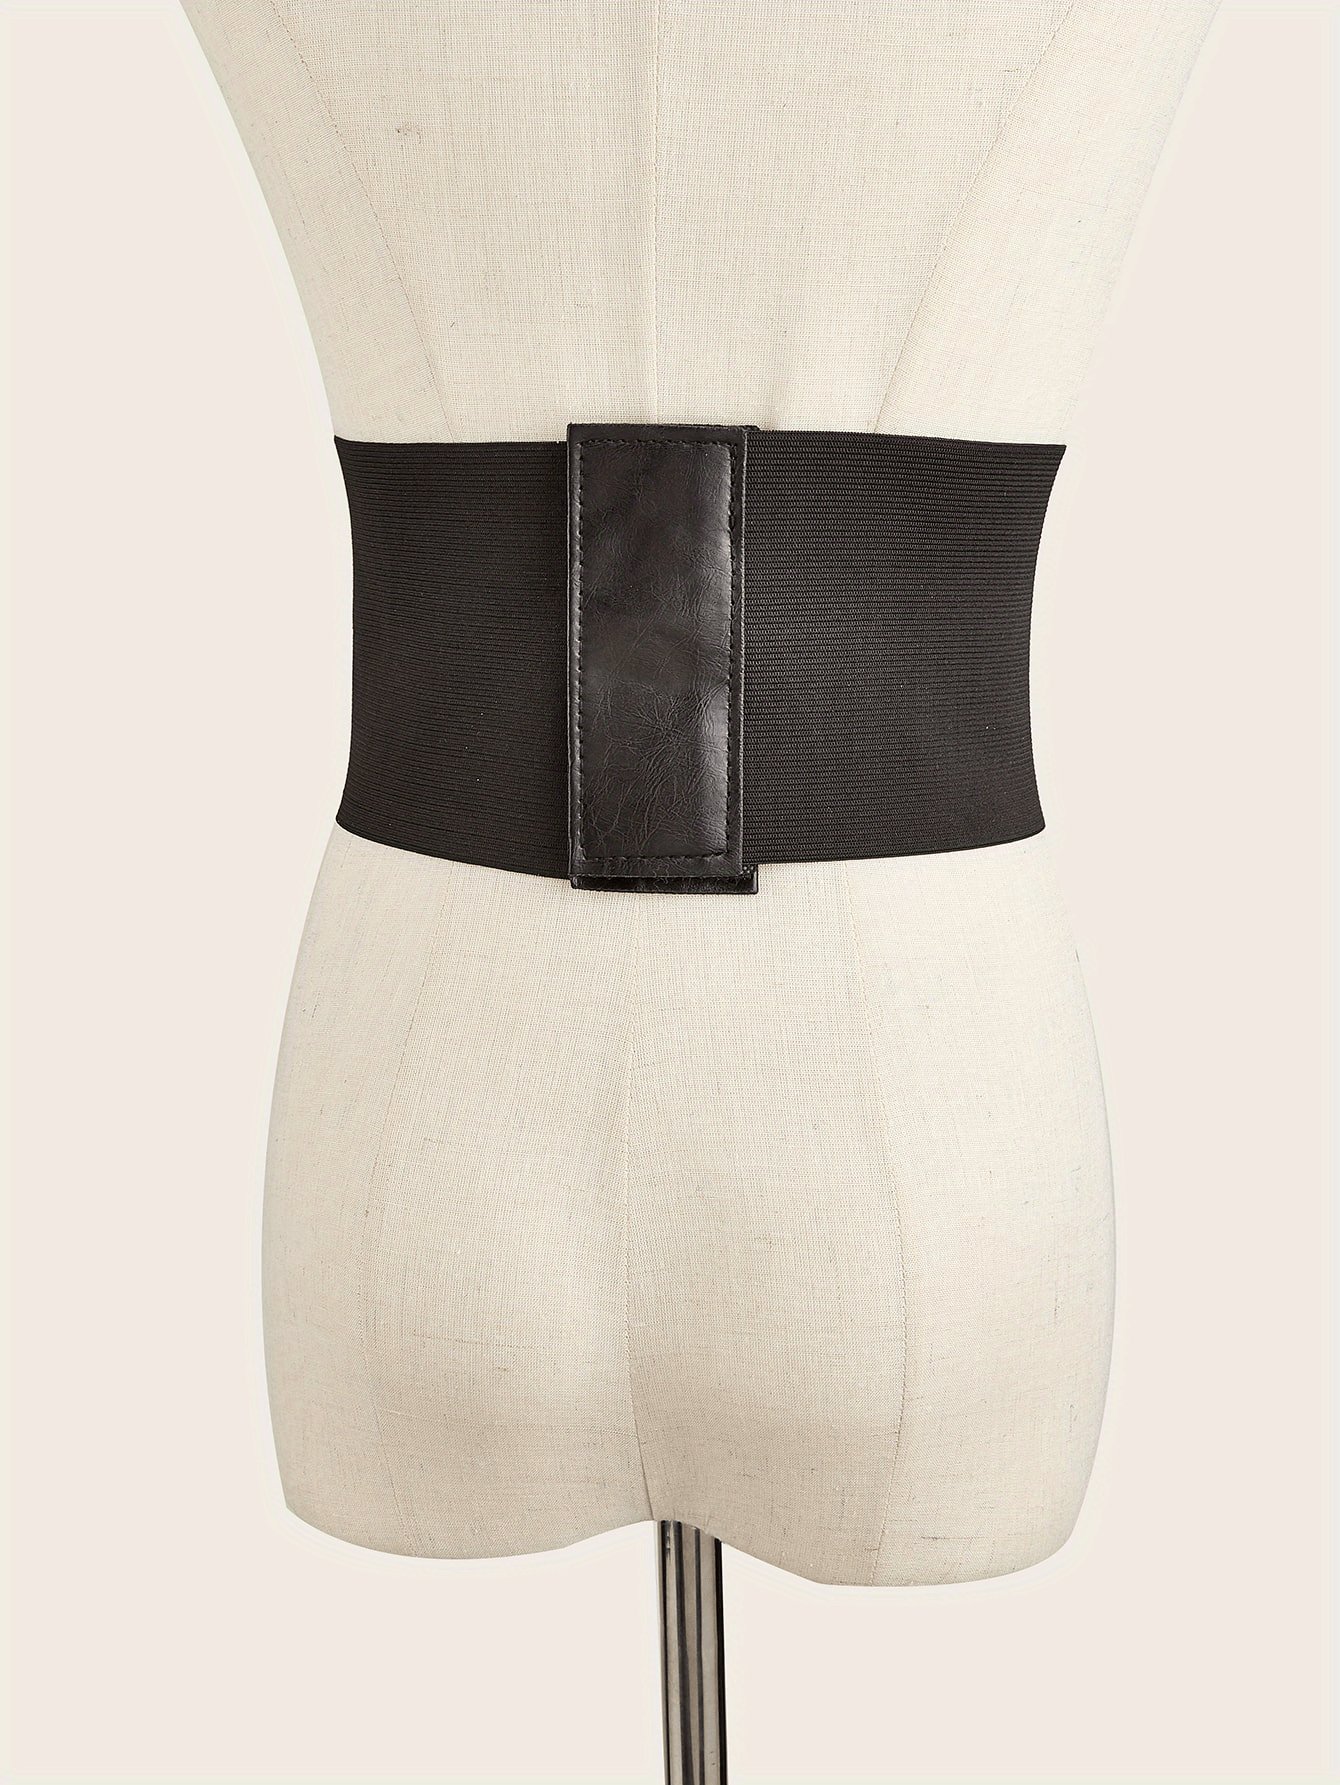 Shop Generic 2x Women Lace Waist Belt Elastic Skirt Dress Girdle